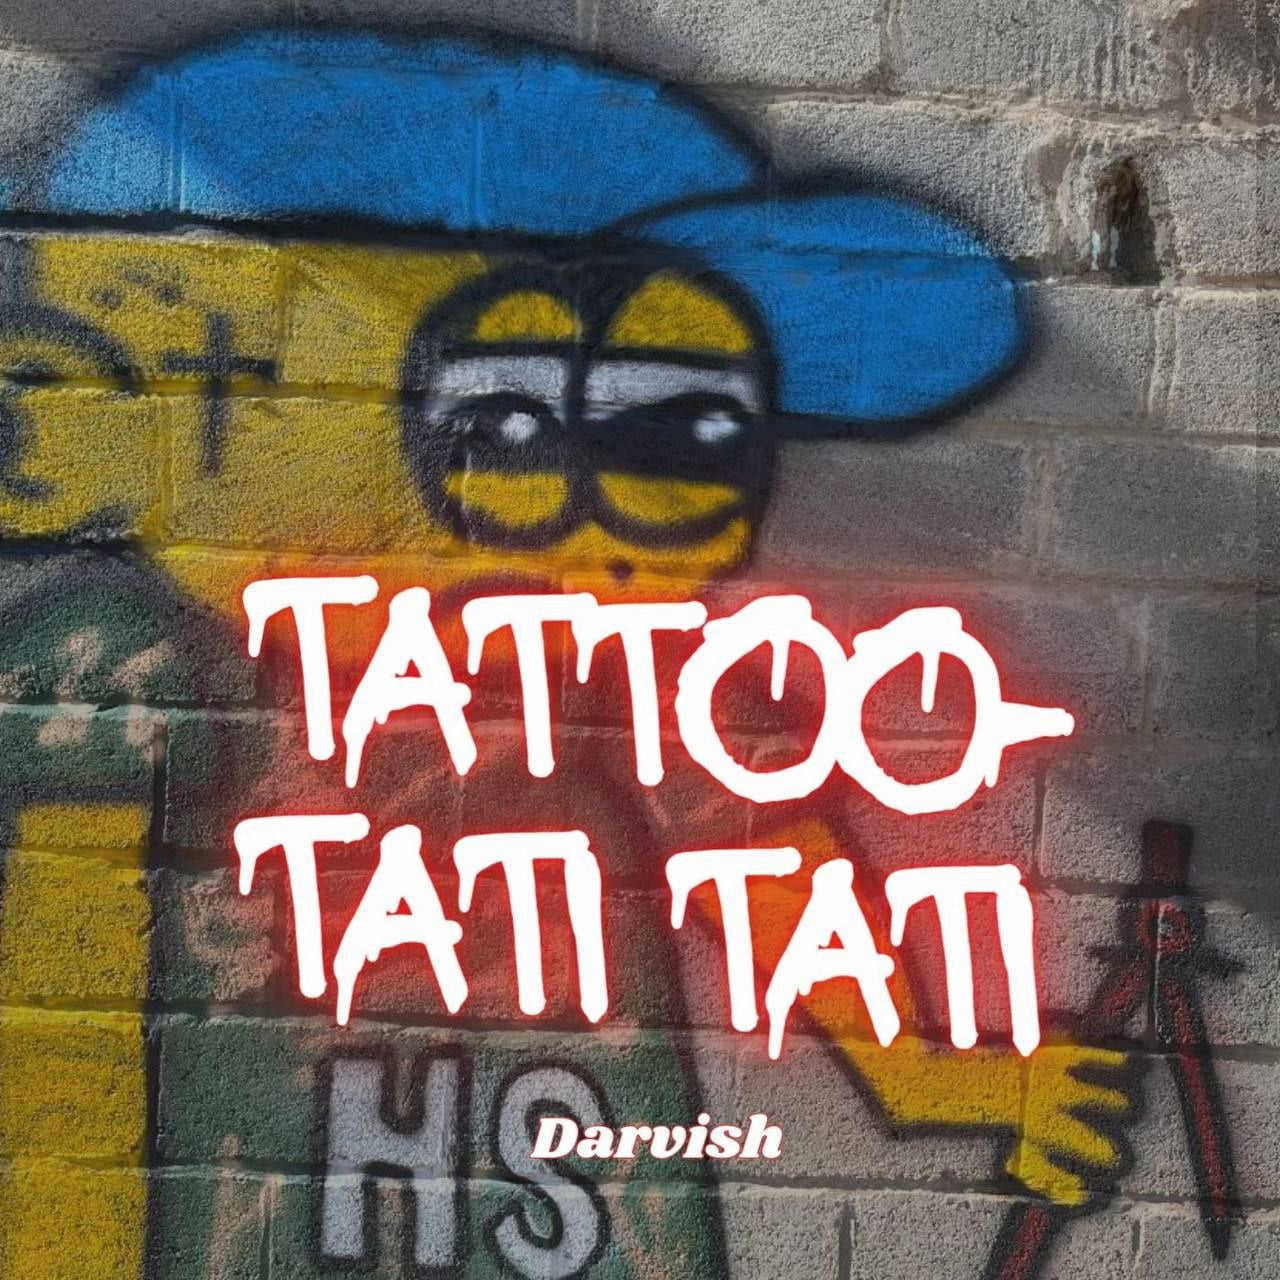 دانلود آهنگ جدید درویش با عنوان تتو تاتی تاتی